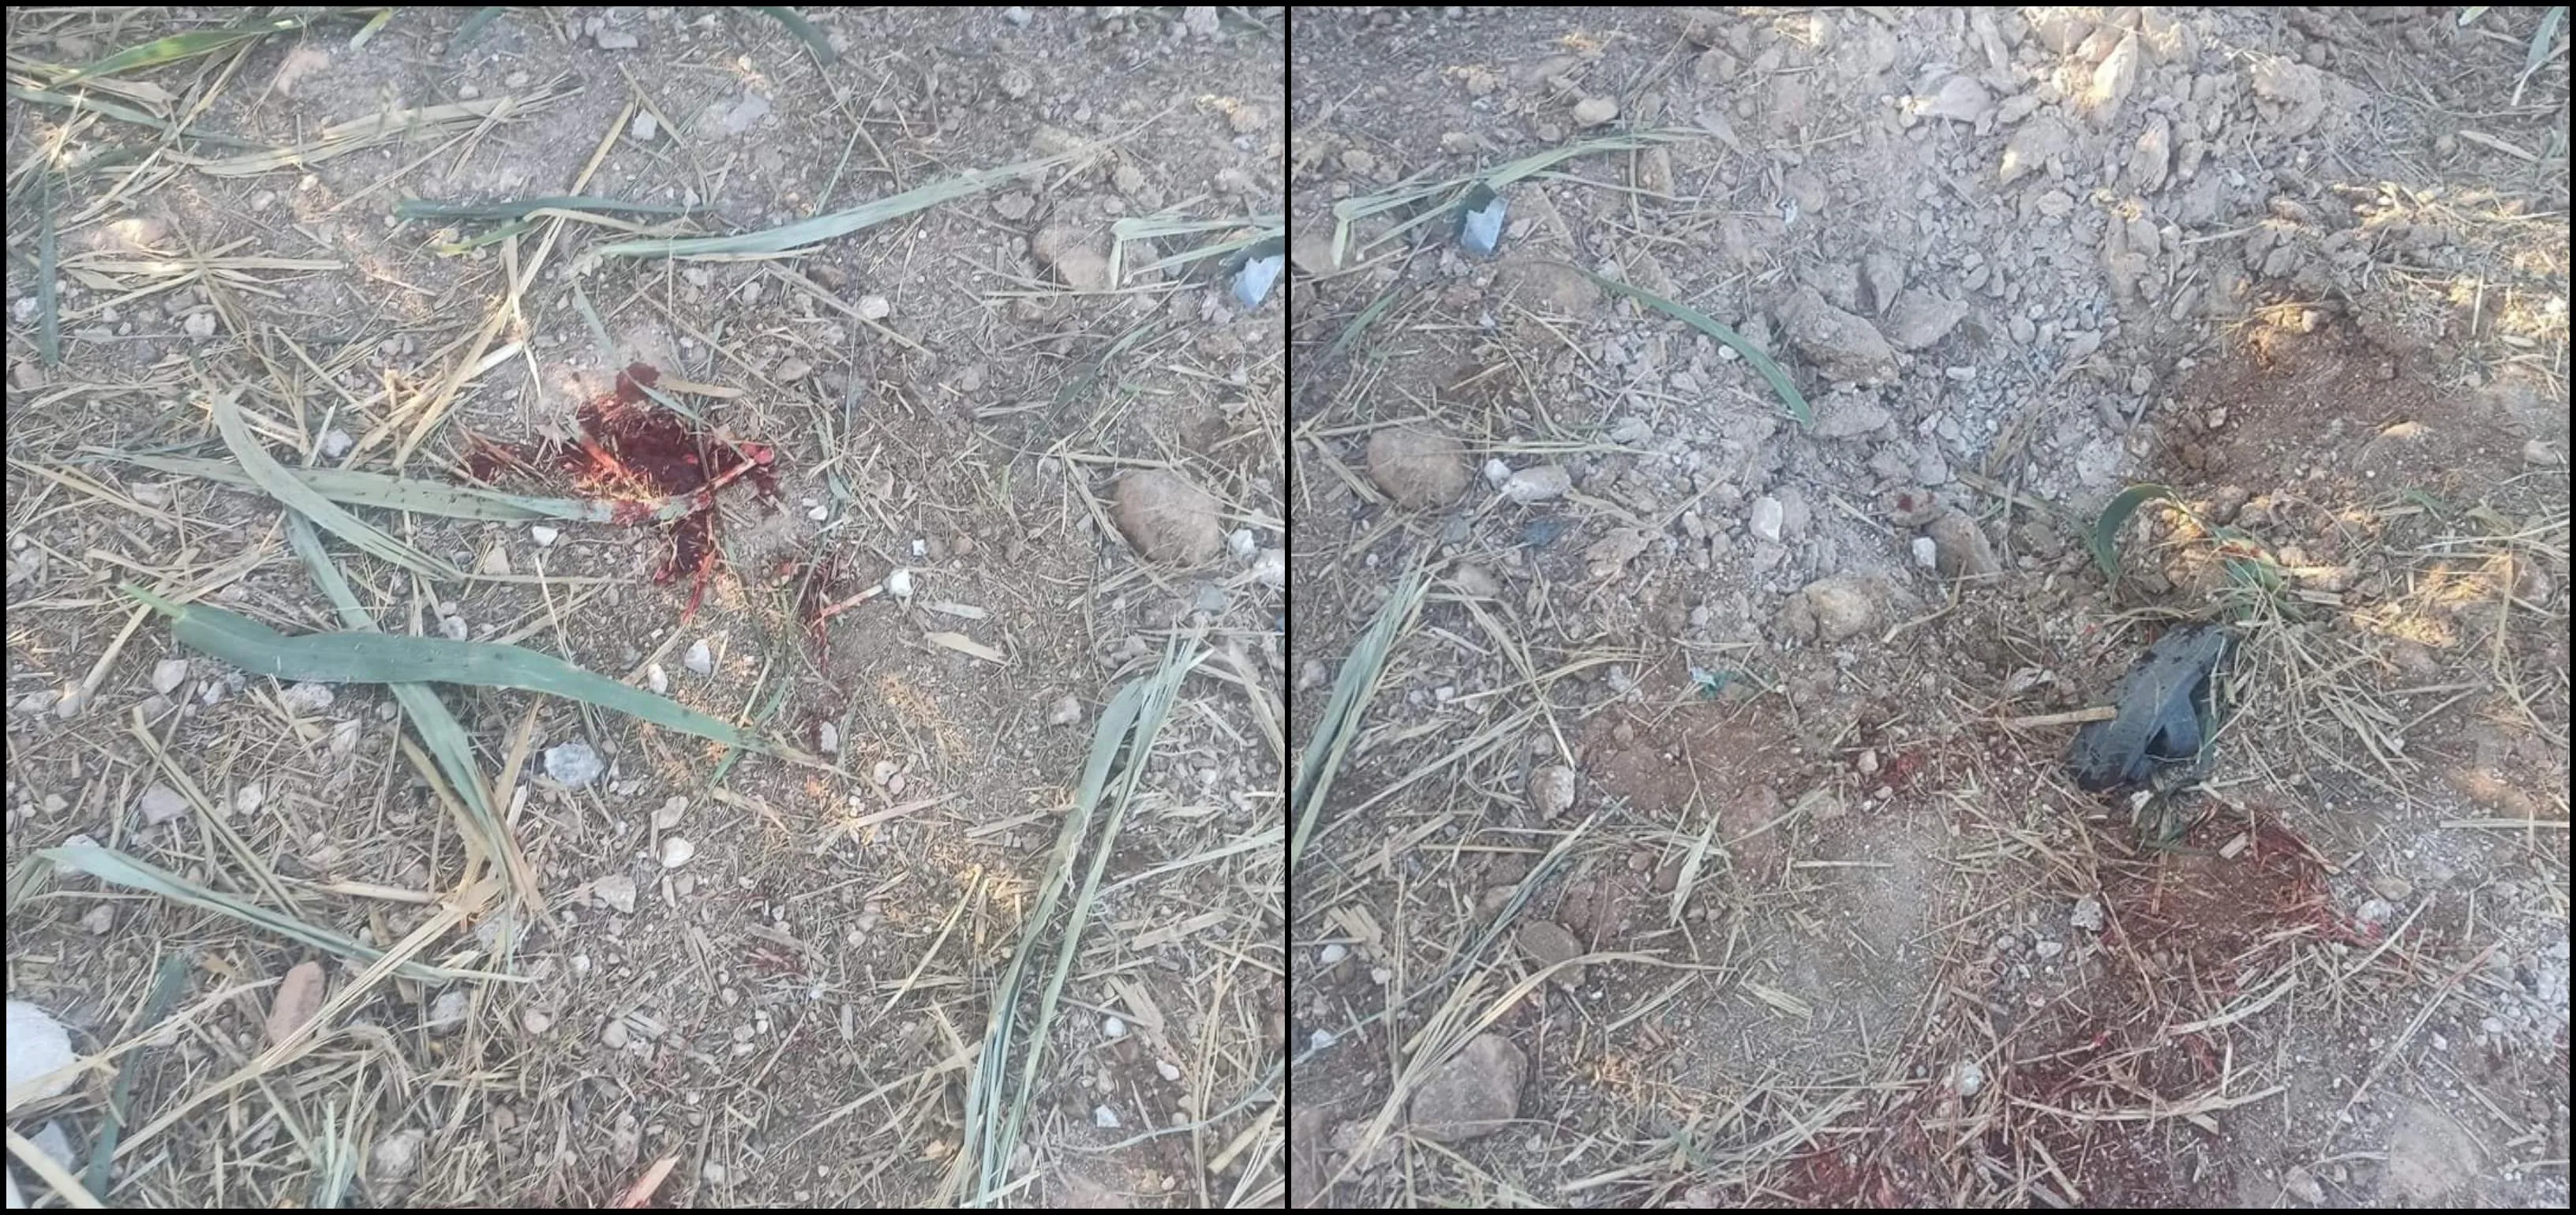 وفاة طفل وإصابة شقيقه بانفجار قنبلة عنقودية من مخلفات قصف النظام بريف حماة